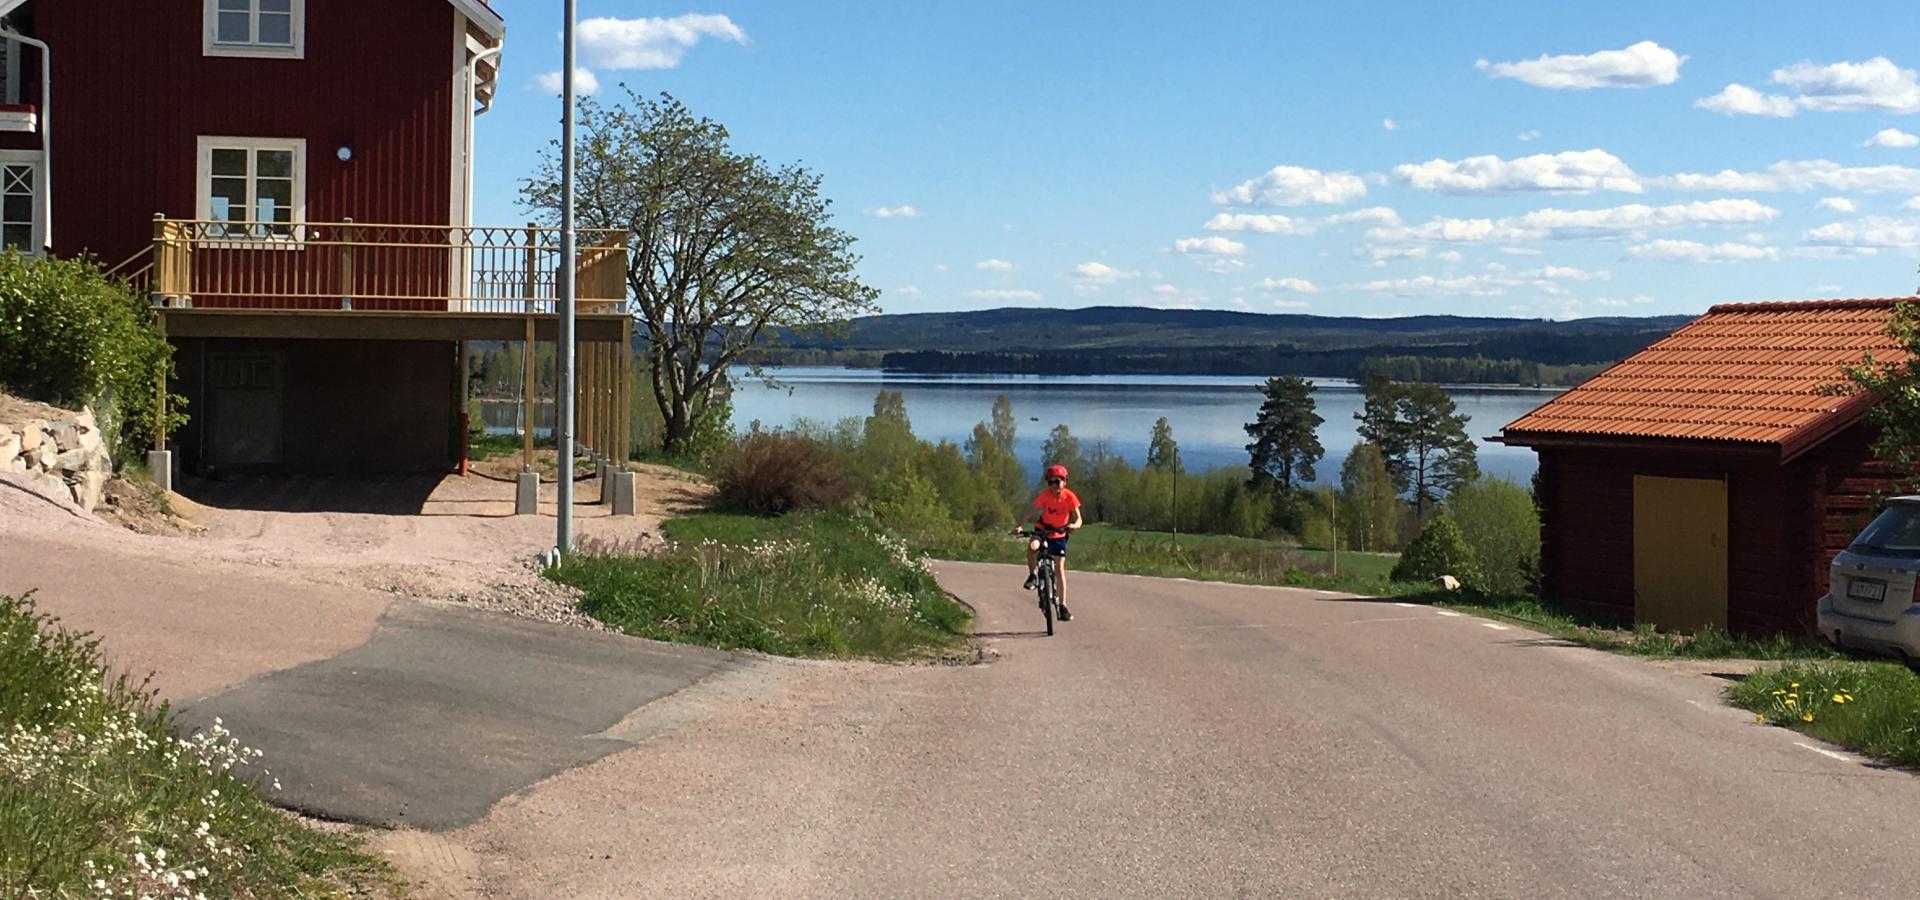 Cyklist på landsväg i dalamiljö.